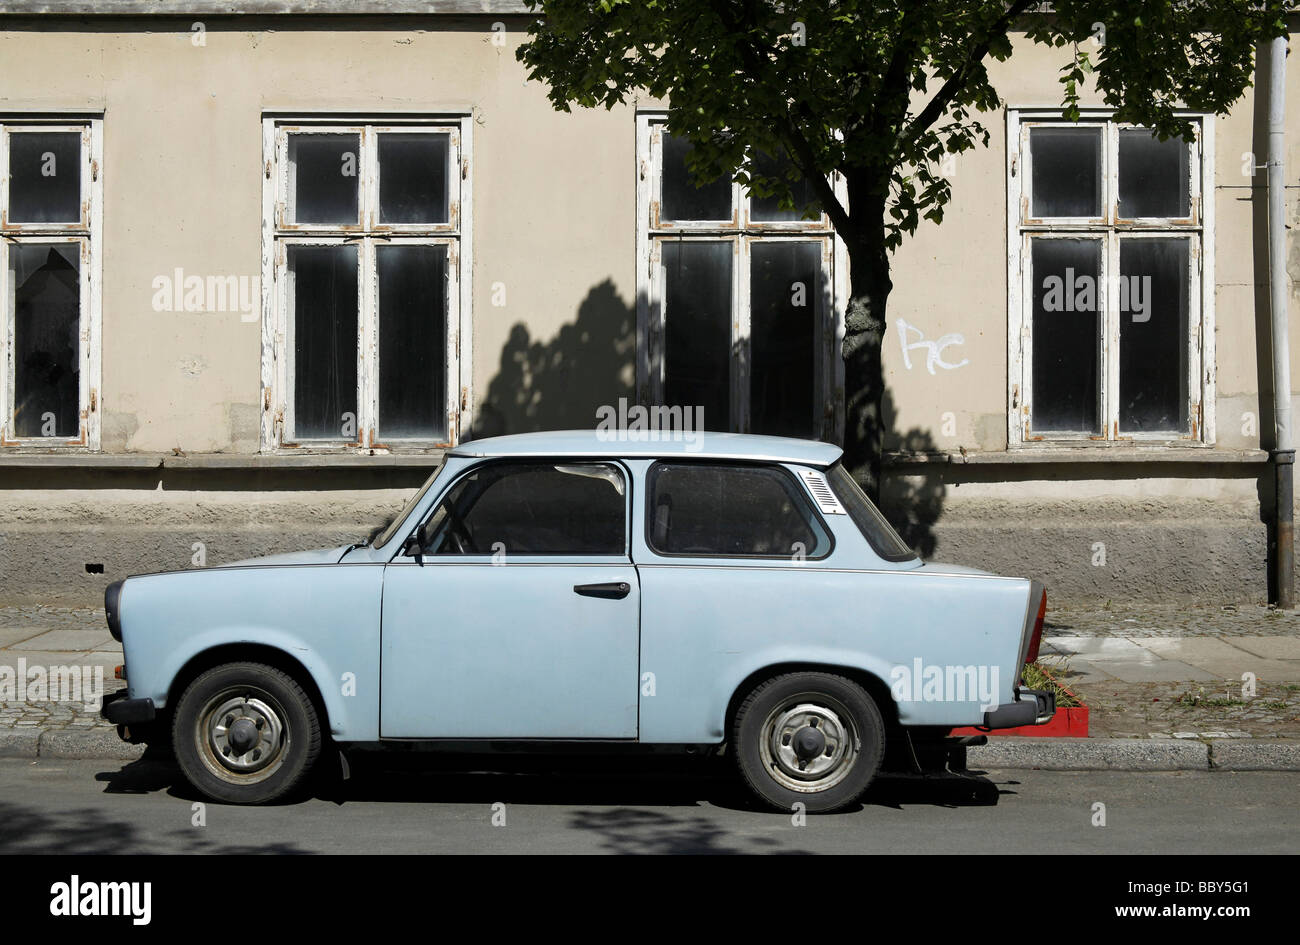 David Car Photos and videos - Trabant 601 #trabant #trabant601